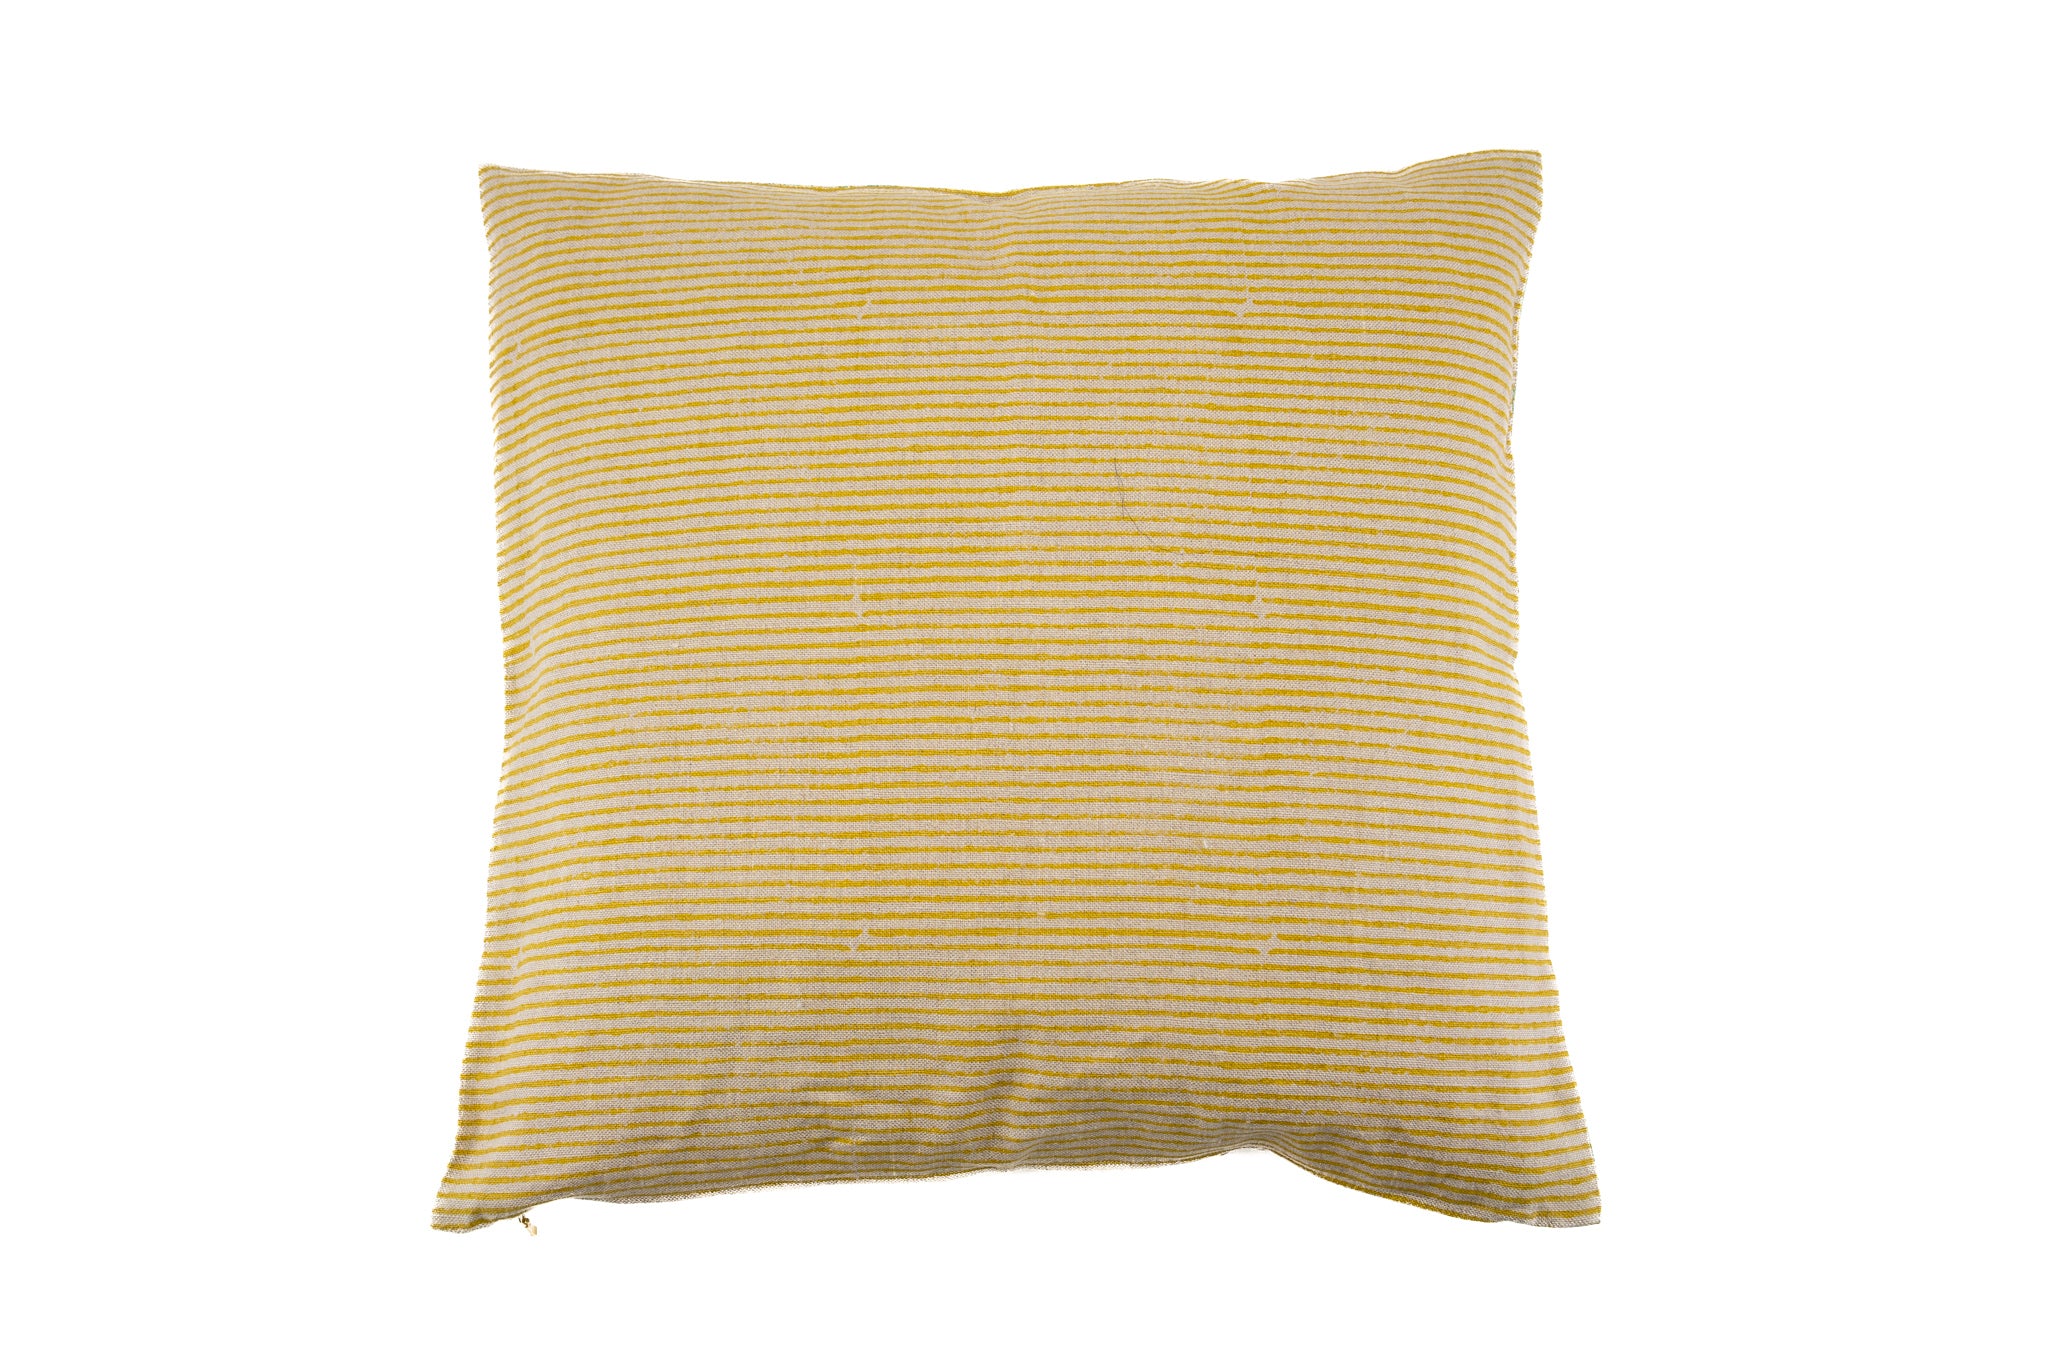 Pillow: Hand printed linen - P425